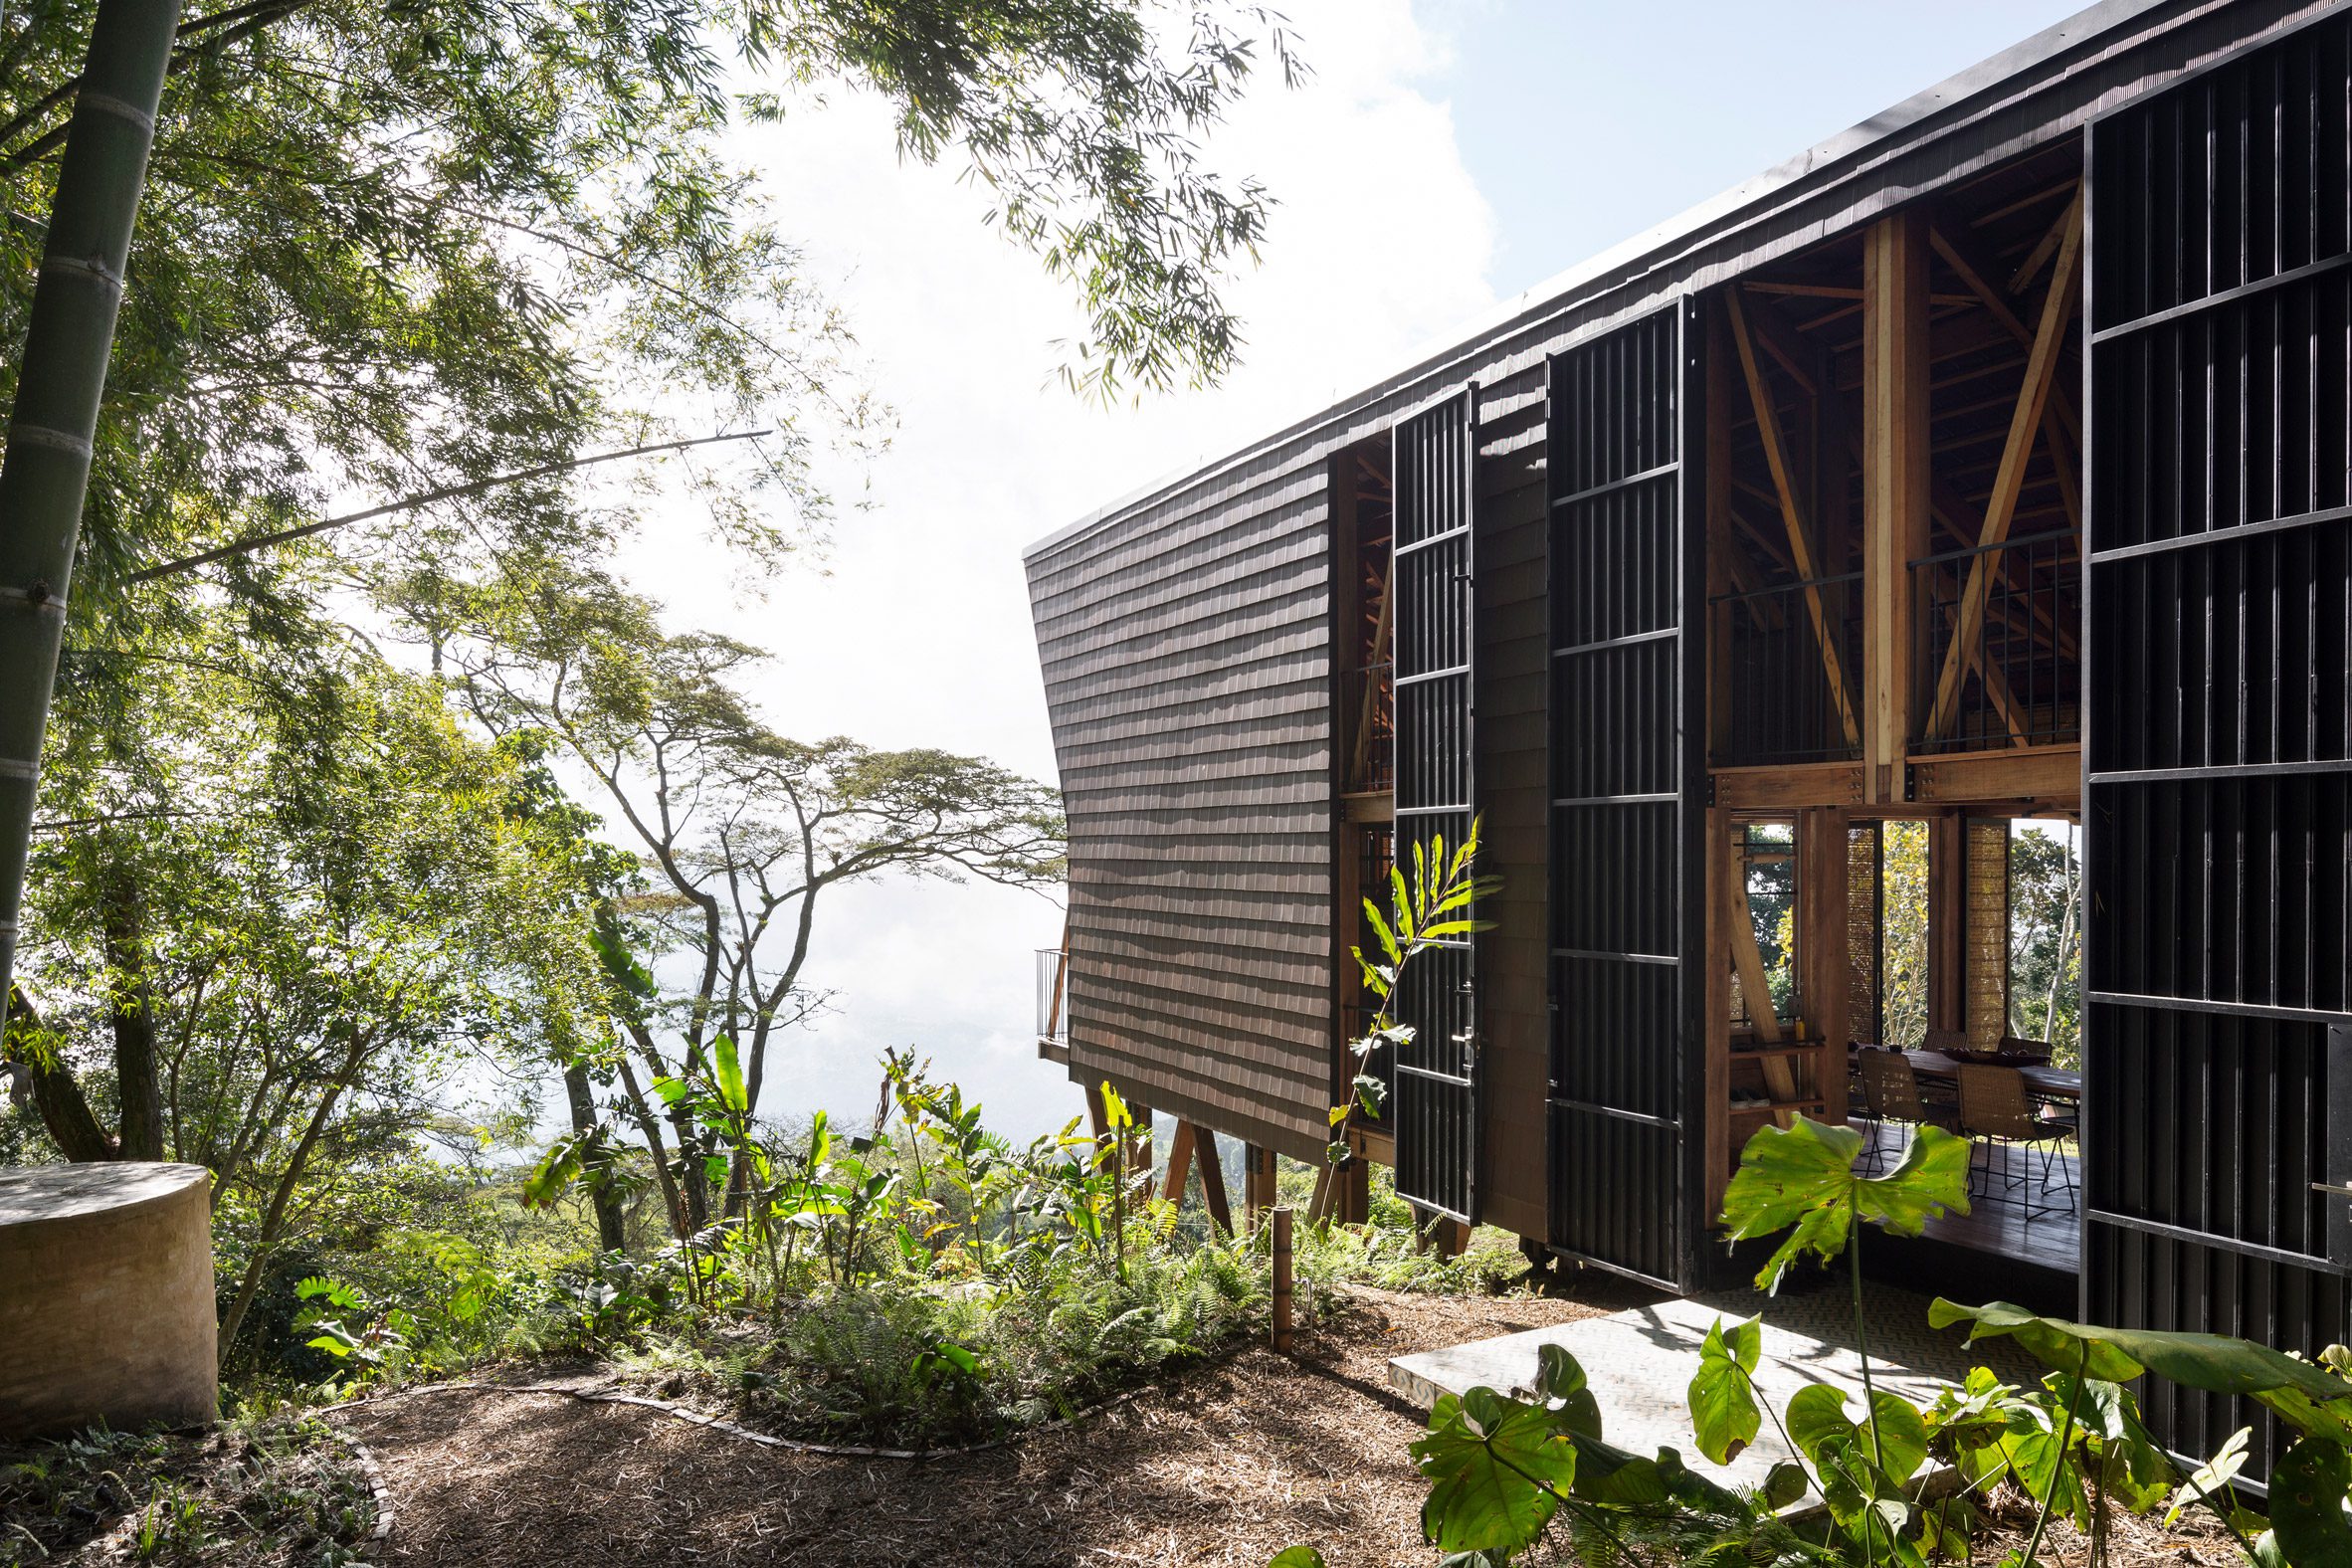 Santiago Pradilla and Zuloark designed Woven House on stilts